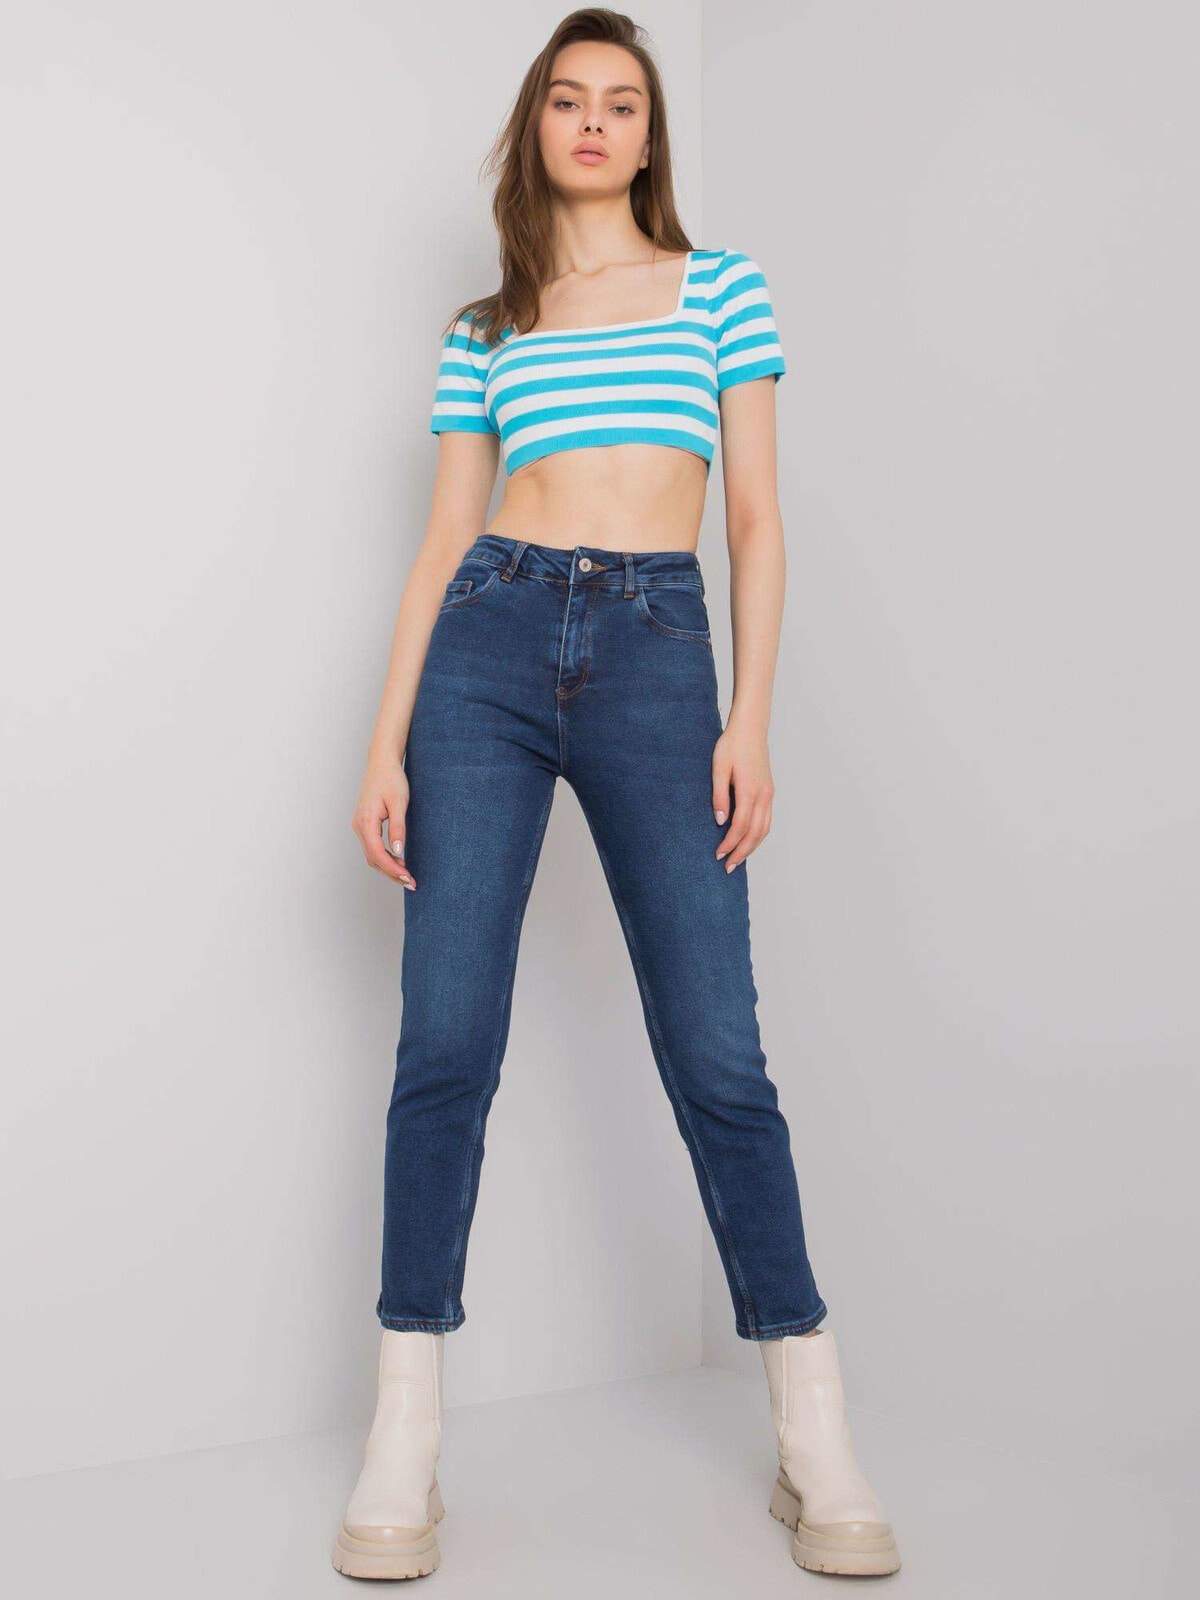 Spodnie jeans-MR-SP-5326.41-niebieski